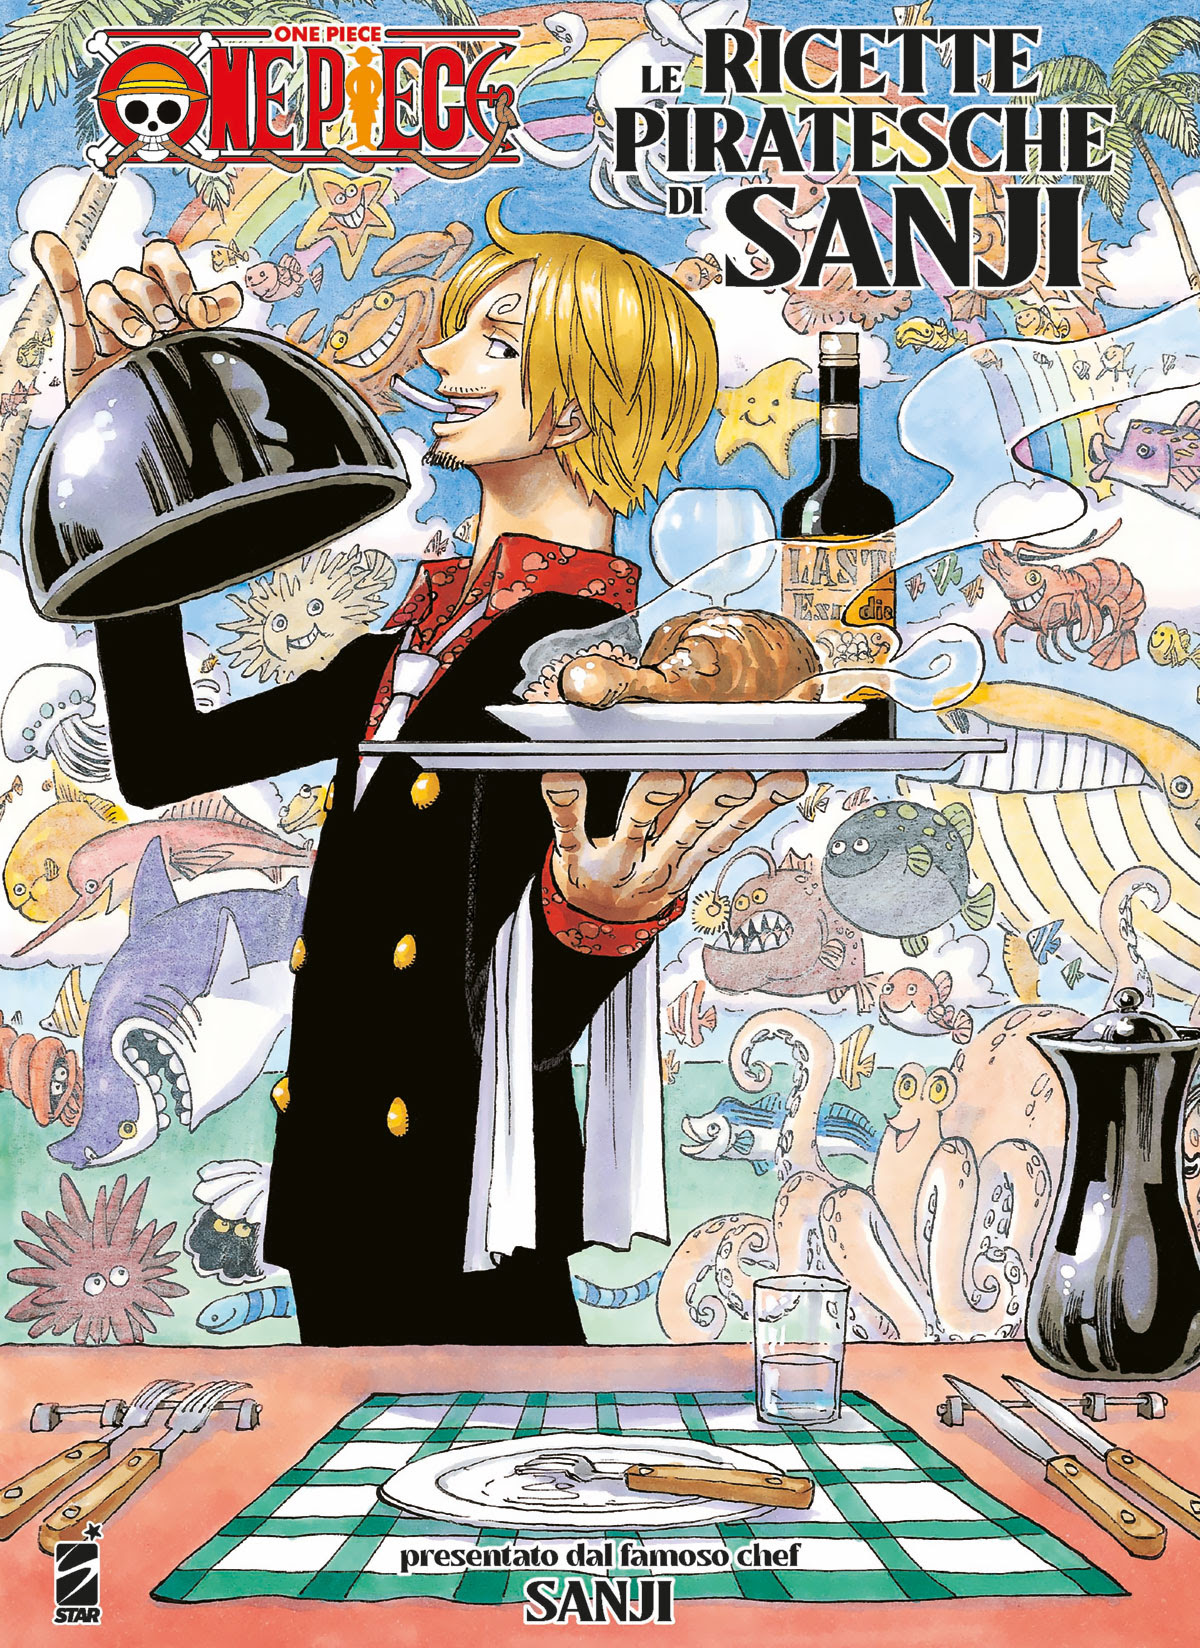 Le ricette pirateche di Sanji in Kindle/PDF/EPUB